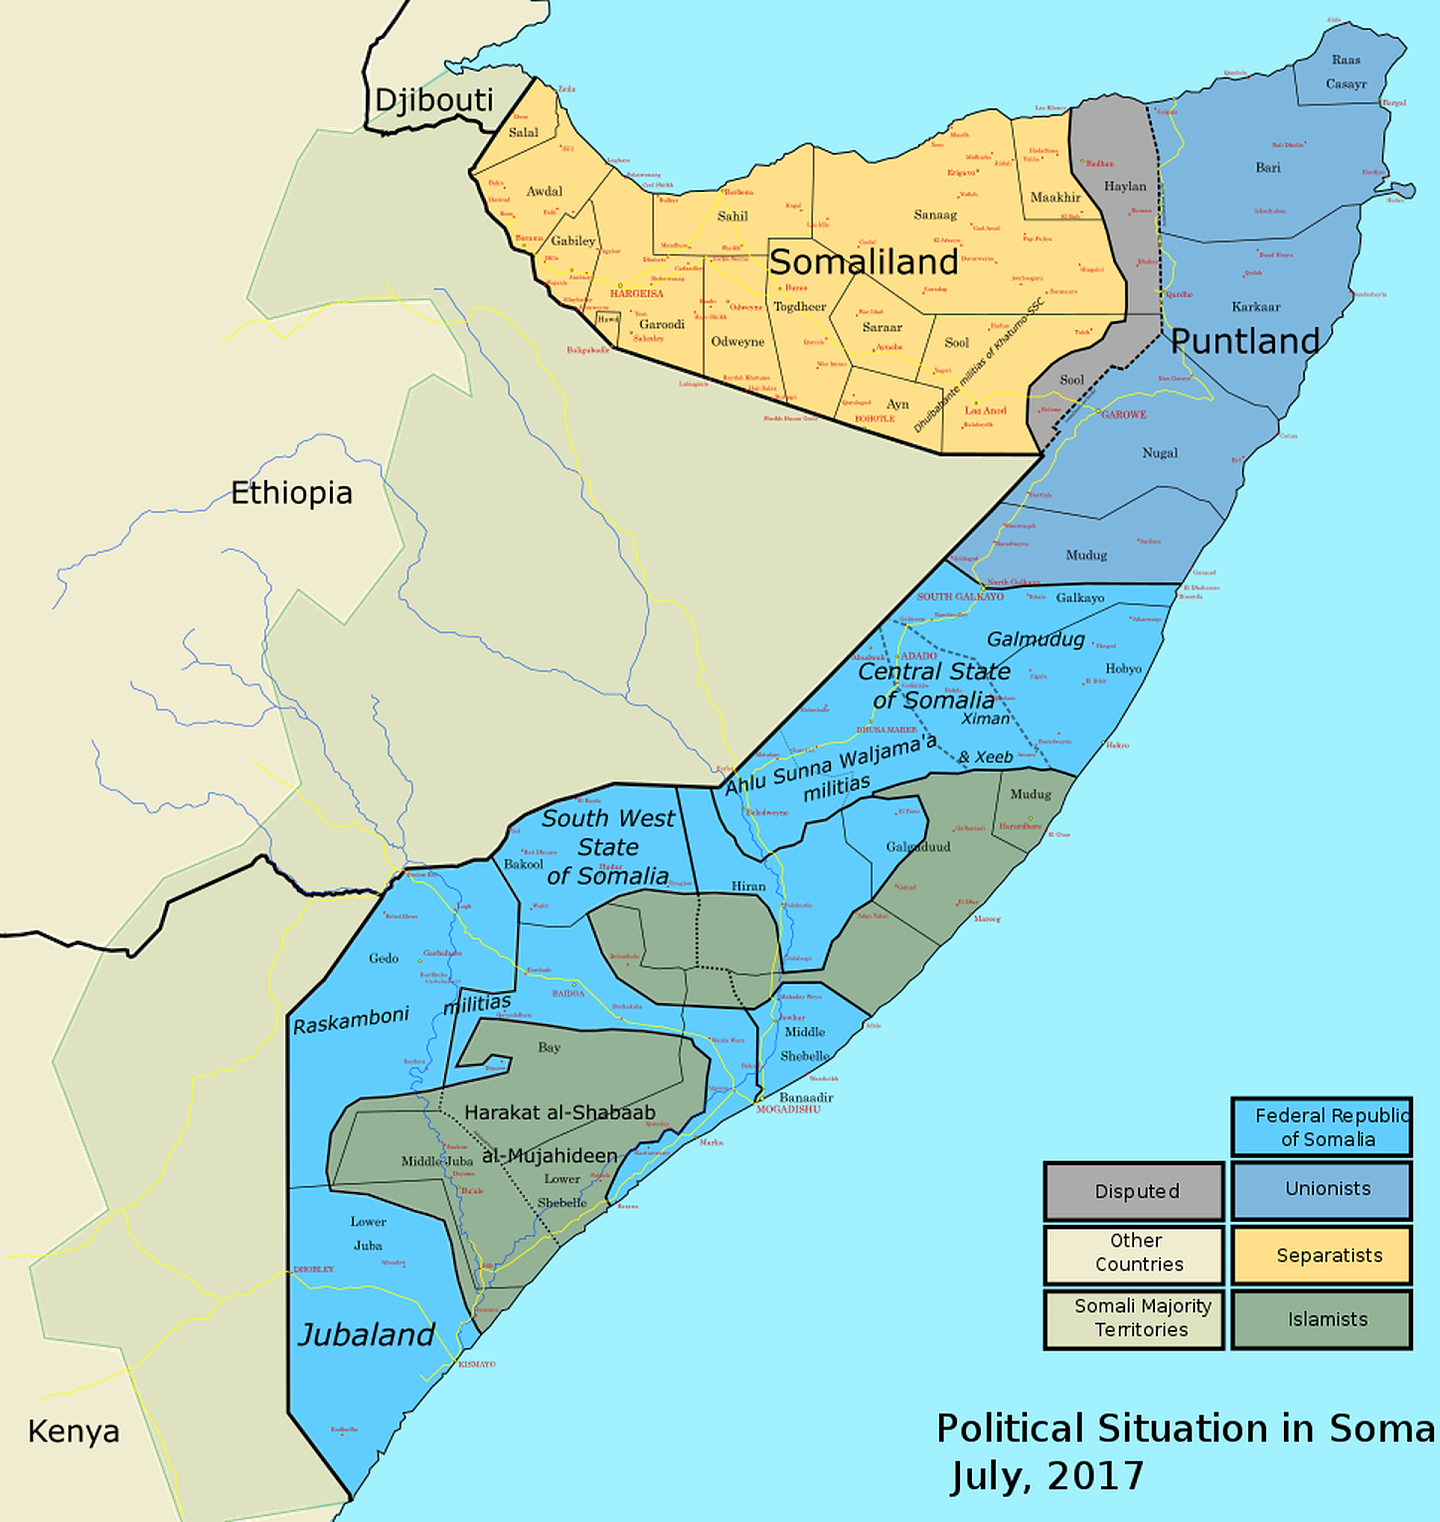 2017年的索马里权力分布图，索马里兰（Somaliland）已自行宣布独立，邦特兰（Puntland）亦属自治地区；南部不少地区都在政府控制范围之外。（Wikimedia Commons）